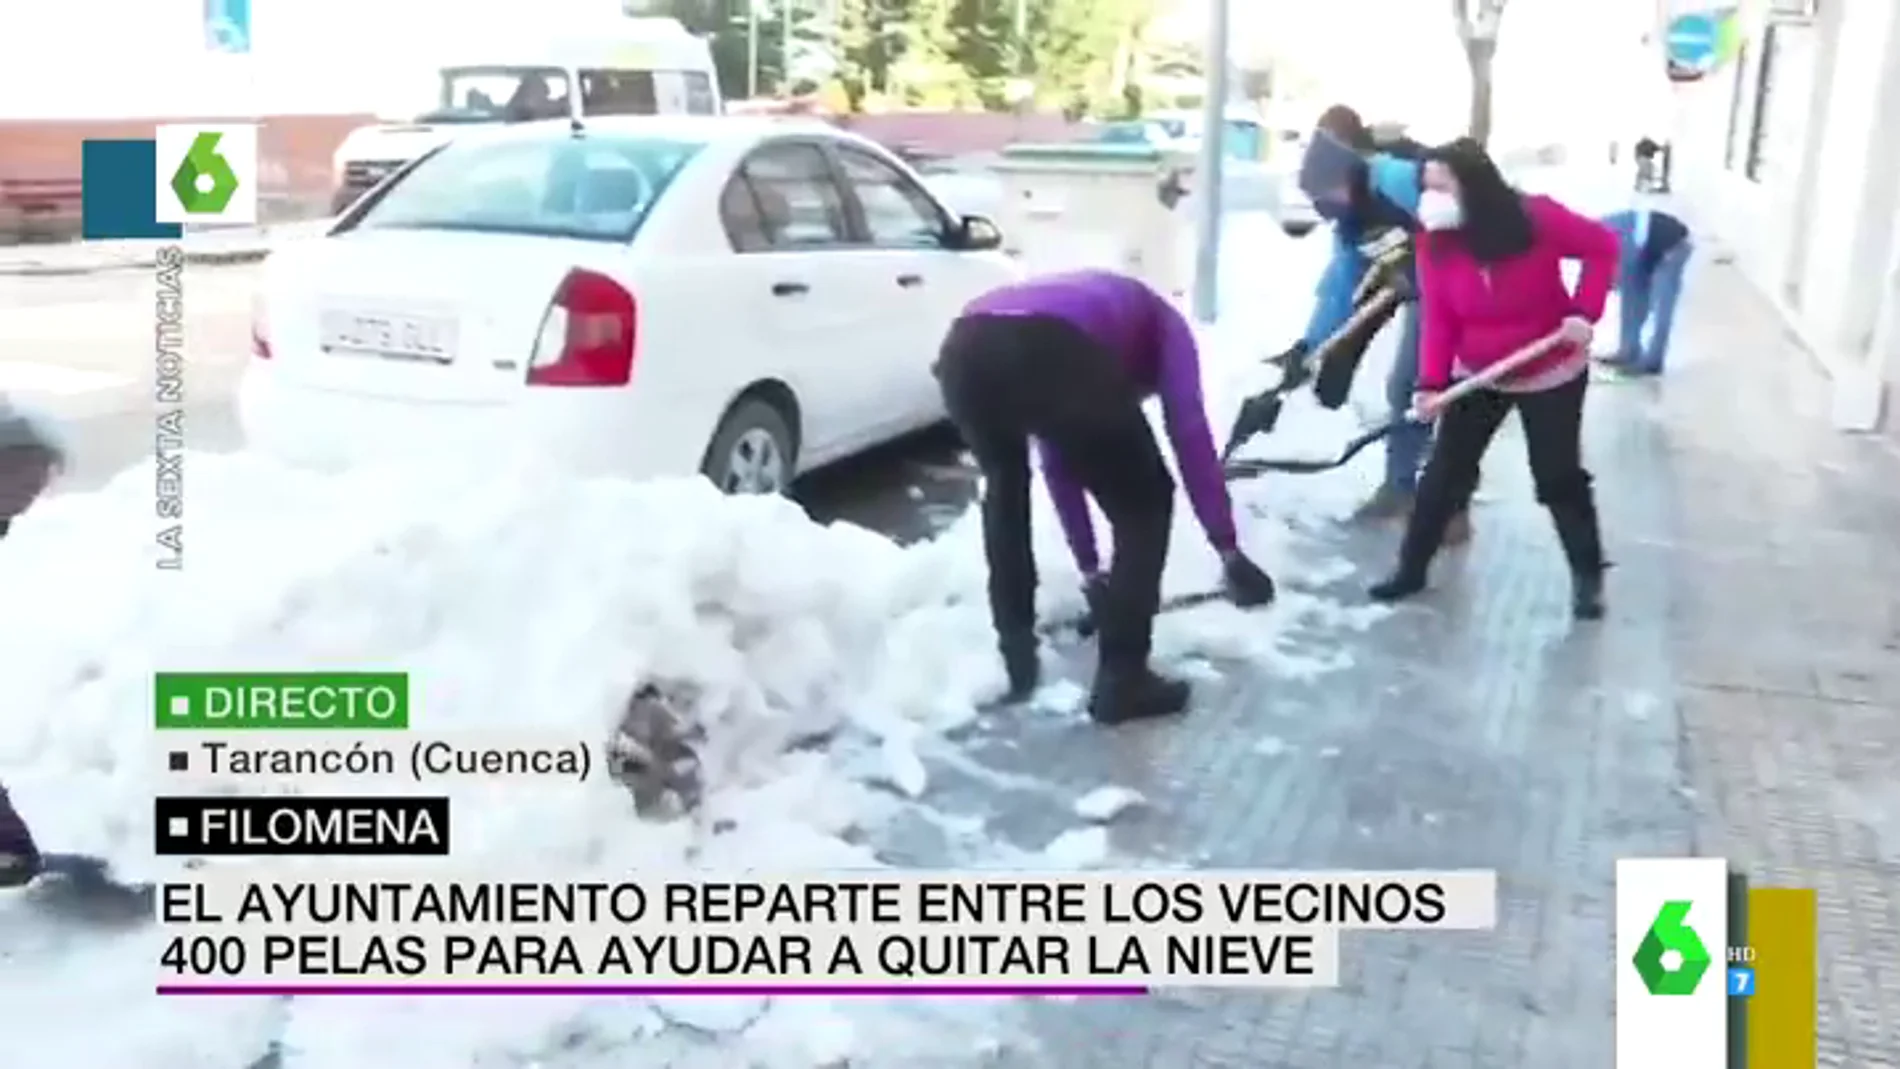 El divertido error de un rótulo de laSexta Noticias que 'regala' dinero a unos vecinos de Cuenca